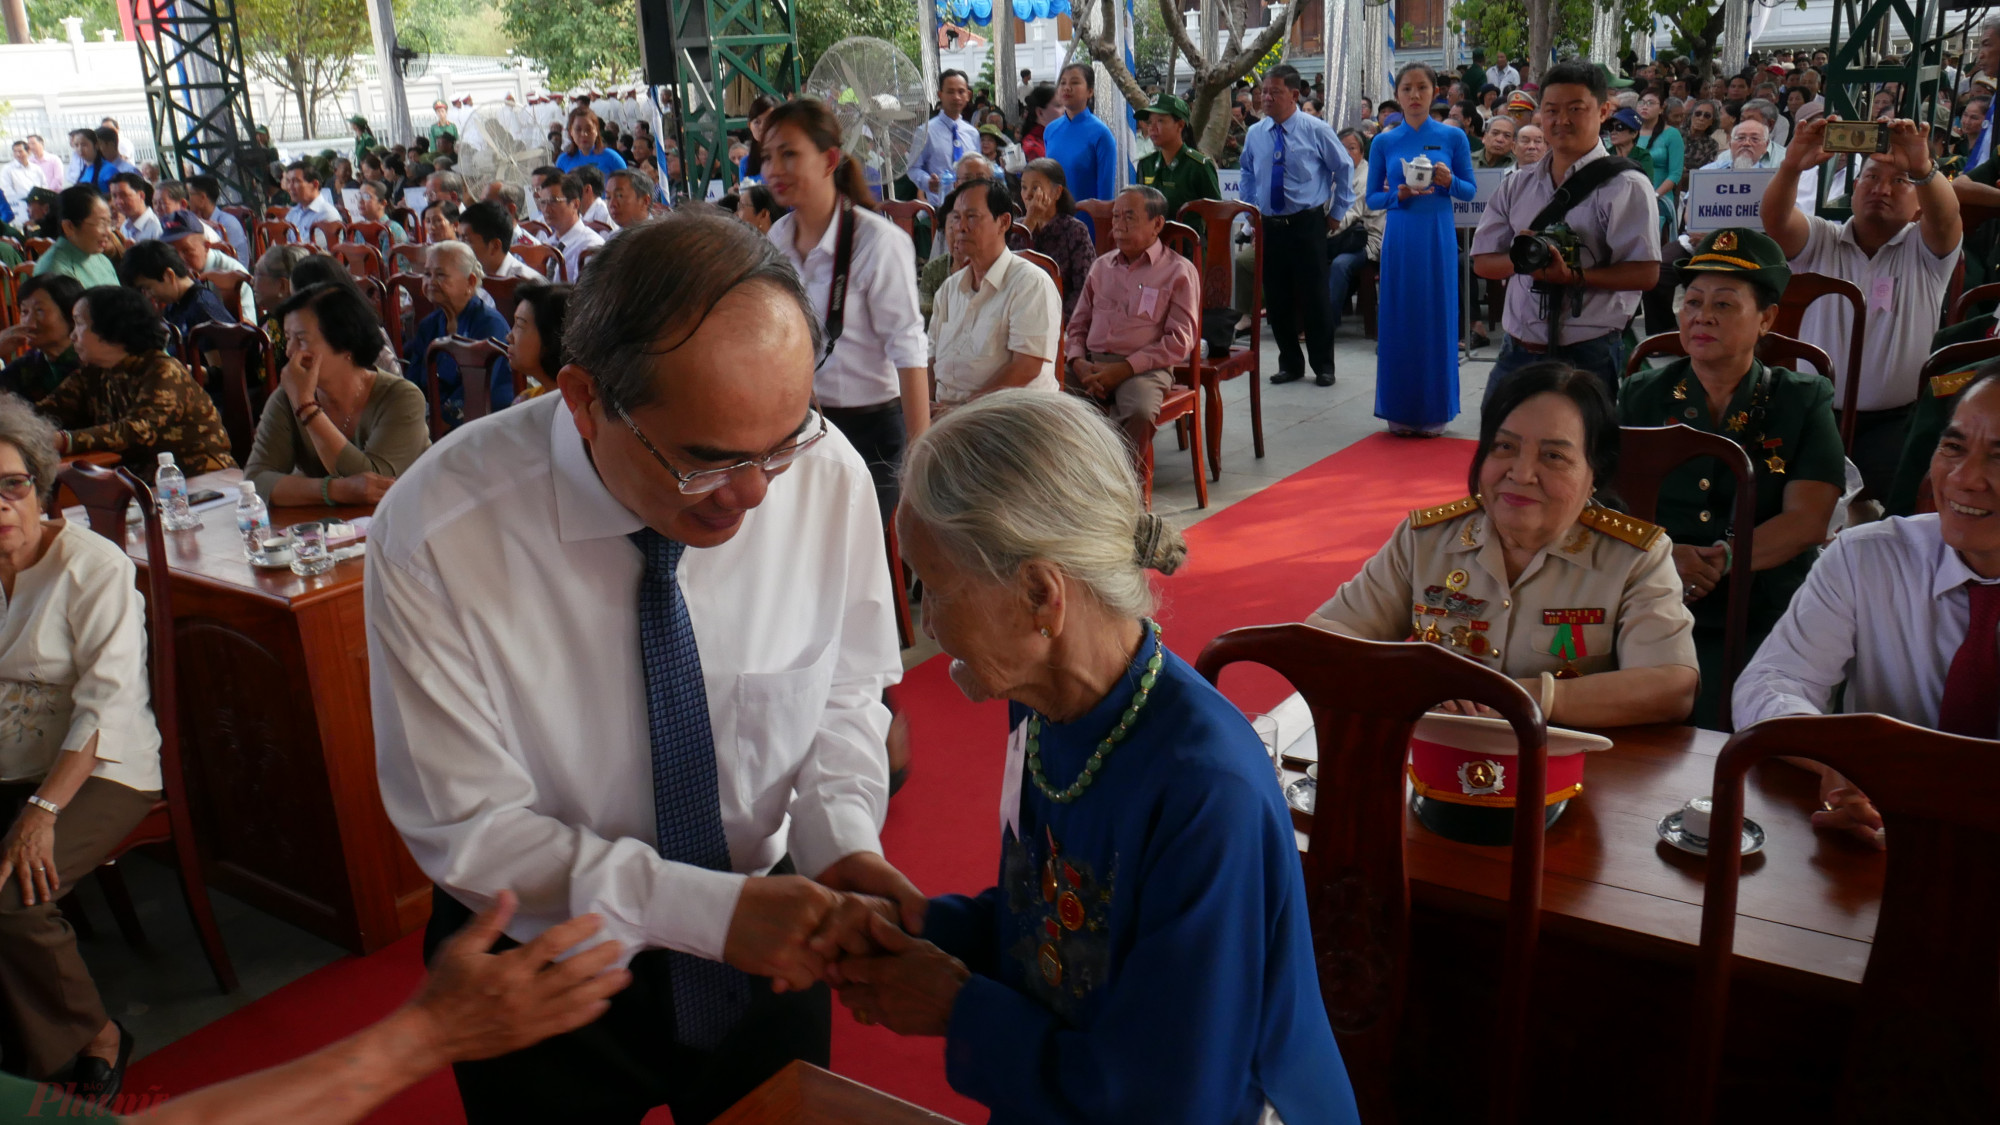 Bí thư Thành ủy TPHCM Nguyễn Thiện Nhân thăm hỏi các đại biểu tại họp mặt truyền thống cách mạng Sài Gòn - Chợ Lớn - Gia Định.